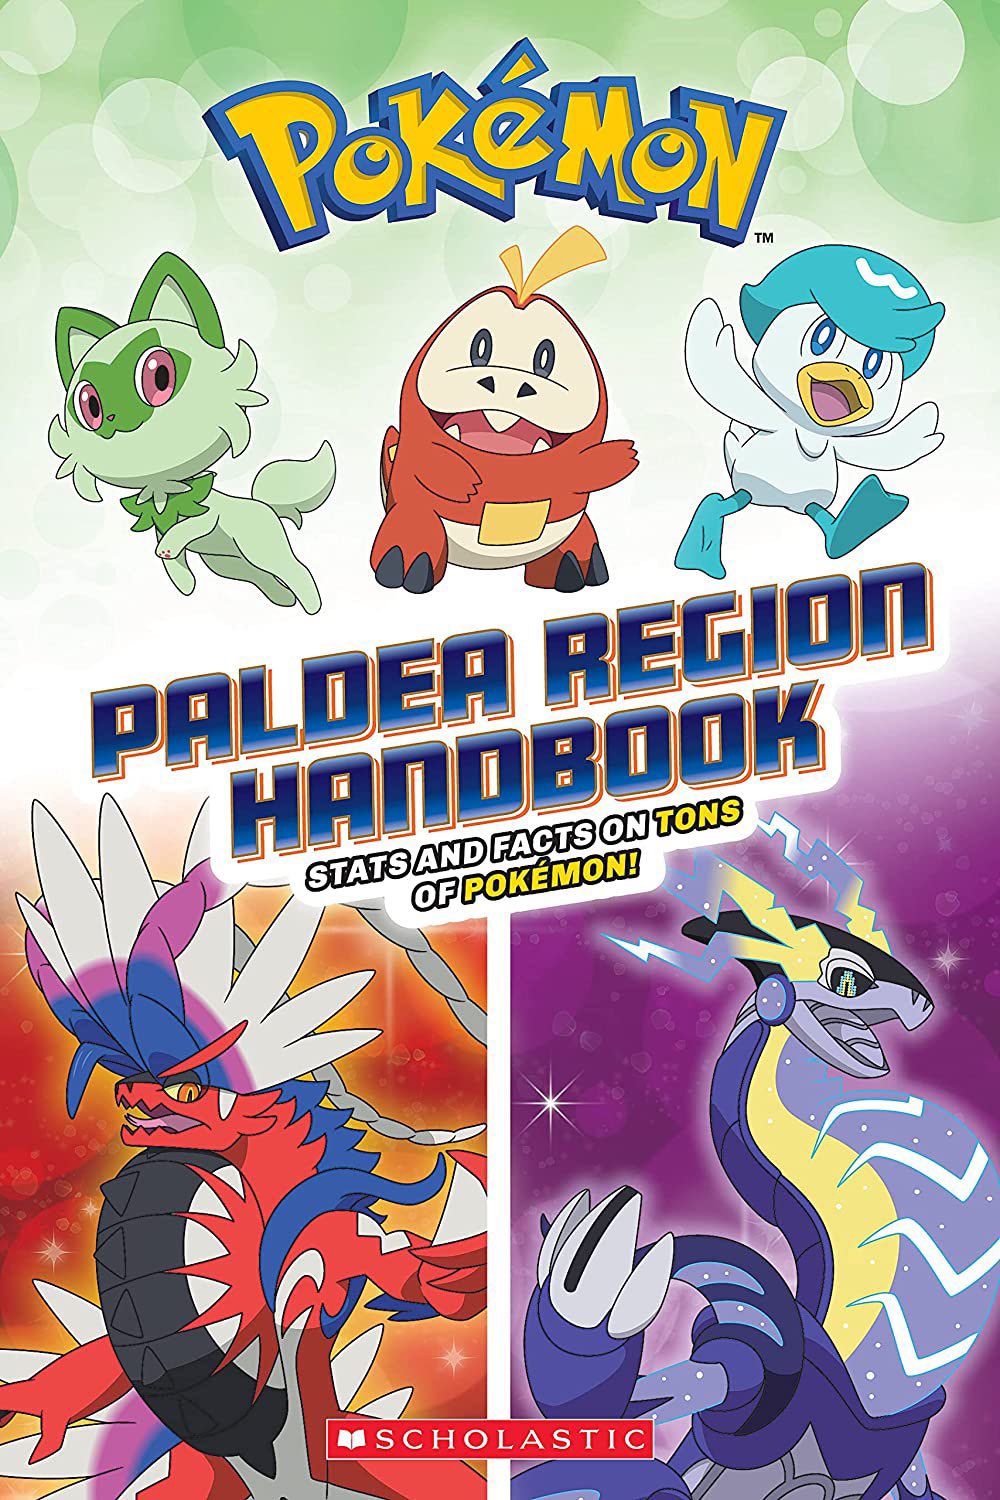 Pokémon Scarlet Pokédex and Pokémon Violet Pokédex for Paldea region